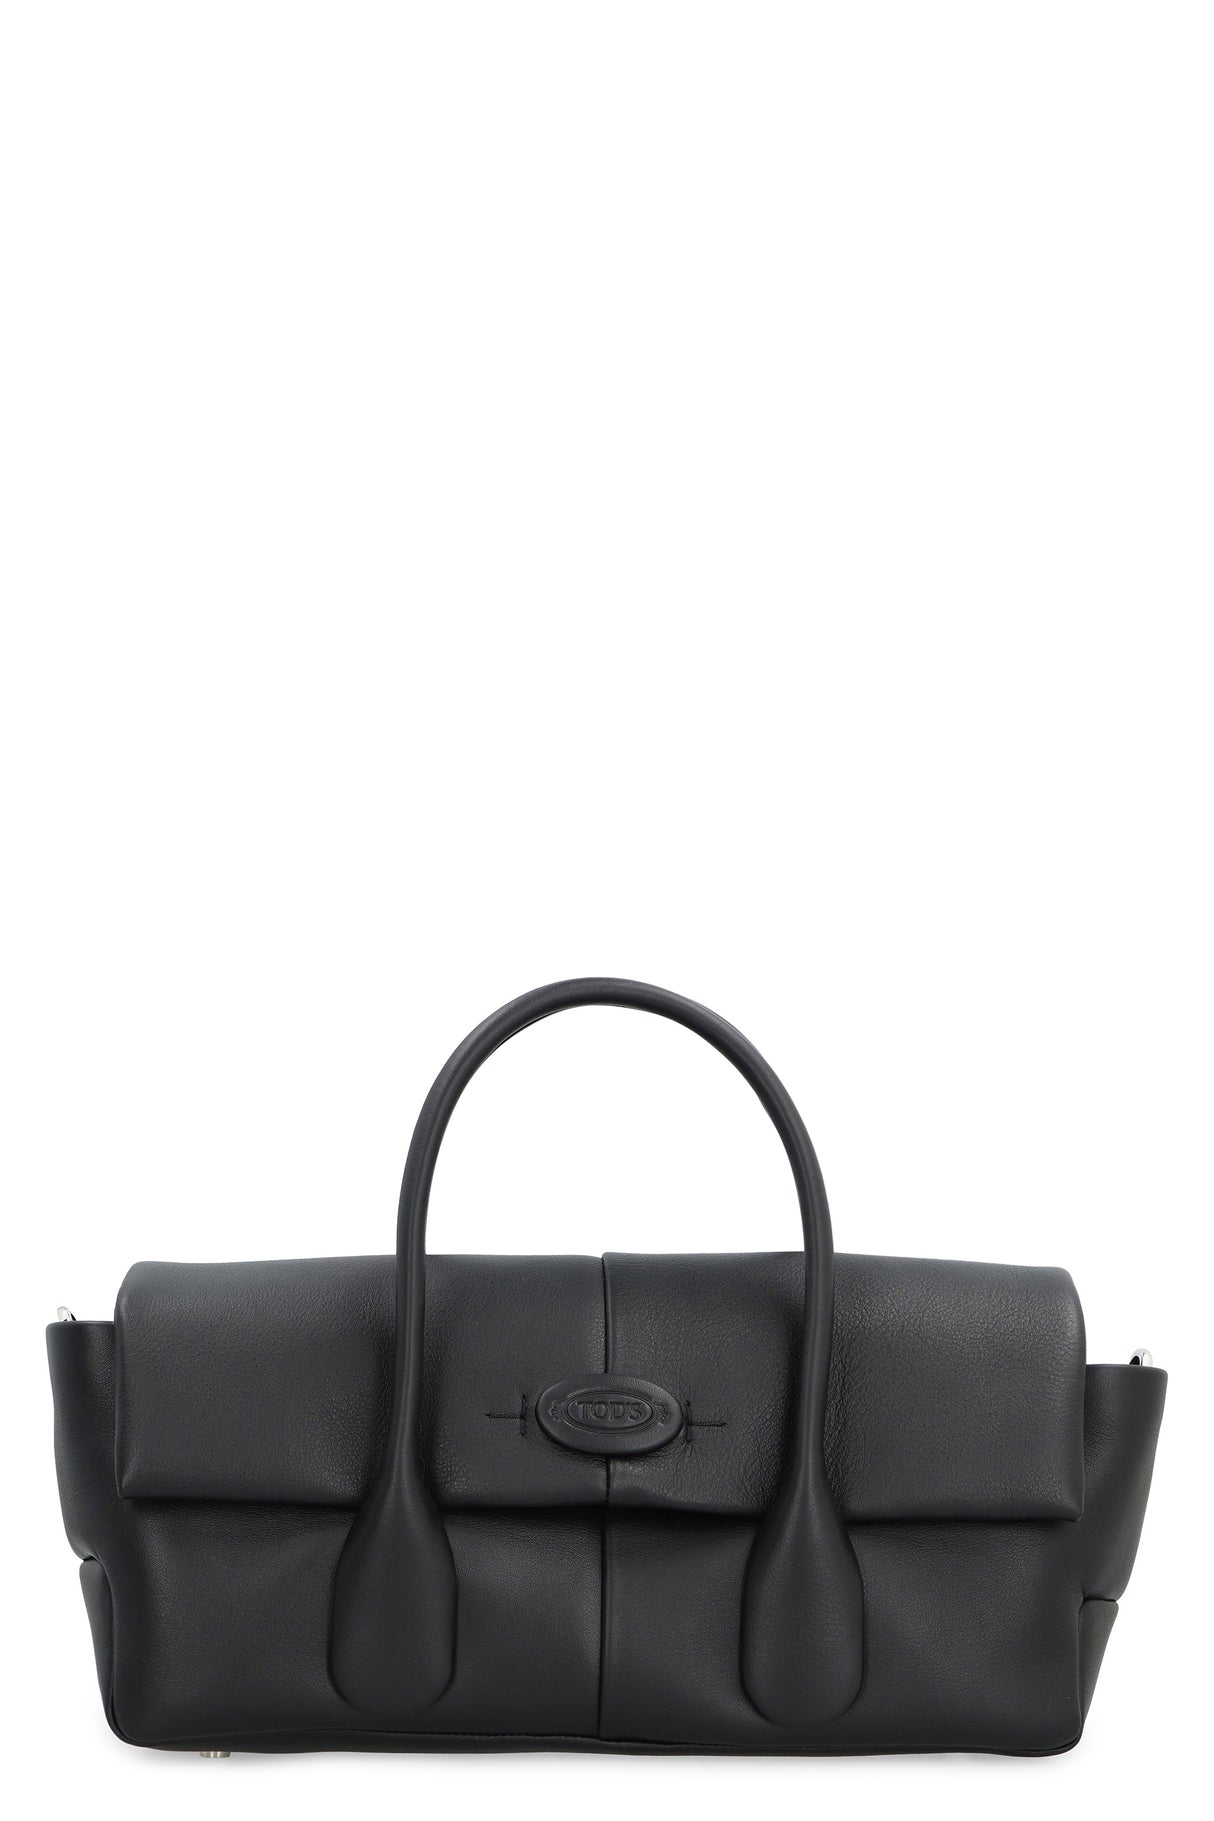 TOD'S Black Leather Handbag for Women | Zippered Closure | Adjustable Shoulder Strap